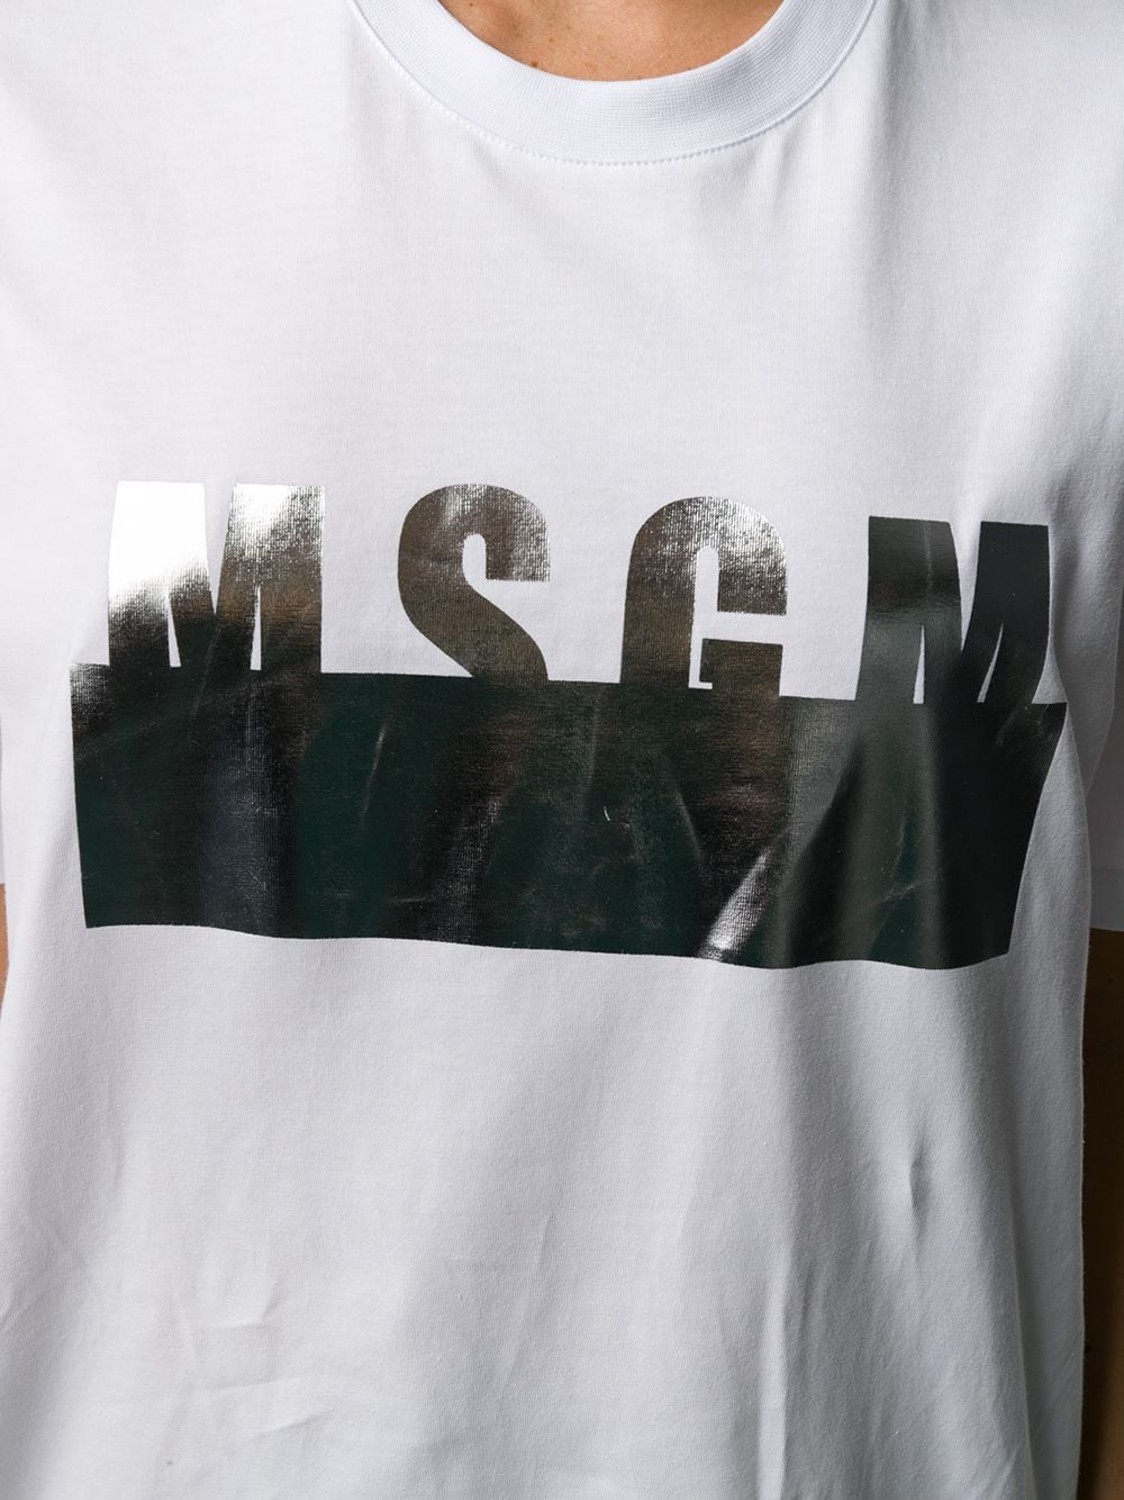 shop MSGM Saldi T-shirts: T-shirt MSGM, modello classico, manica corta, girocollo, lunghezza regolare, logo argento stampato davanti.

Composizione: 100% cotone. number 1628